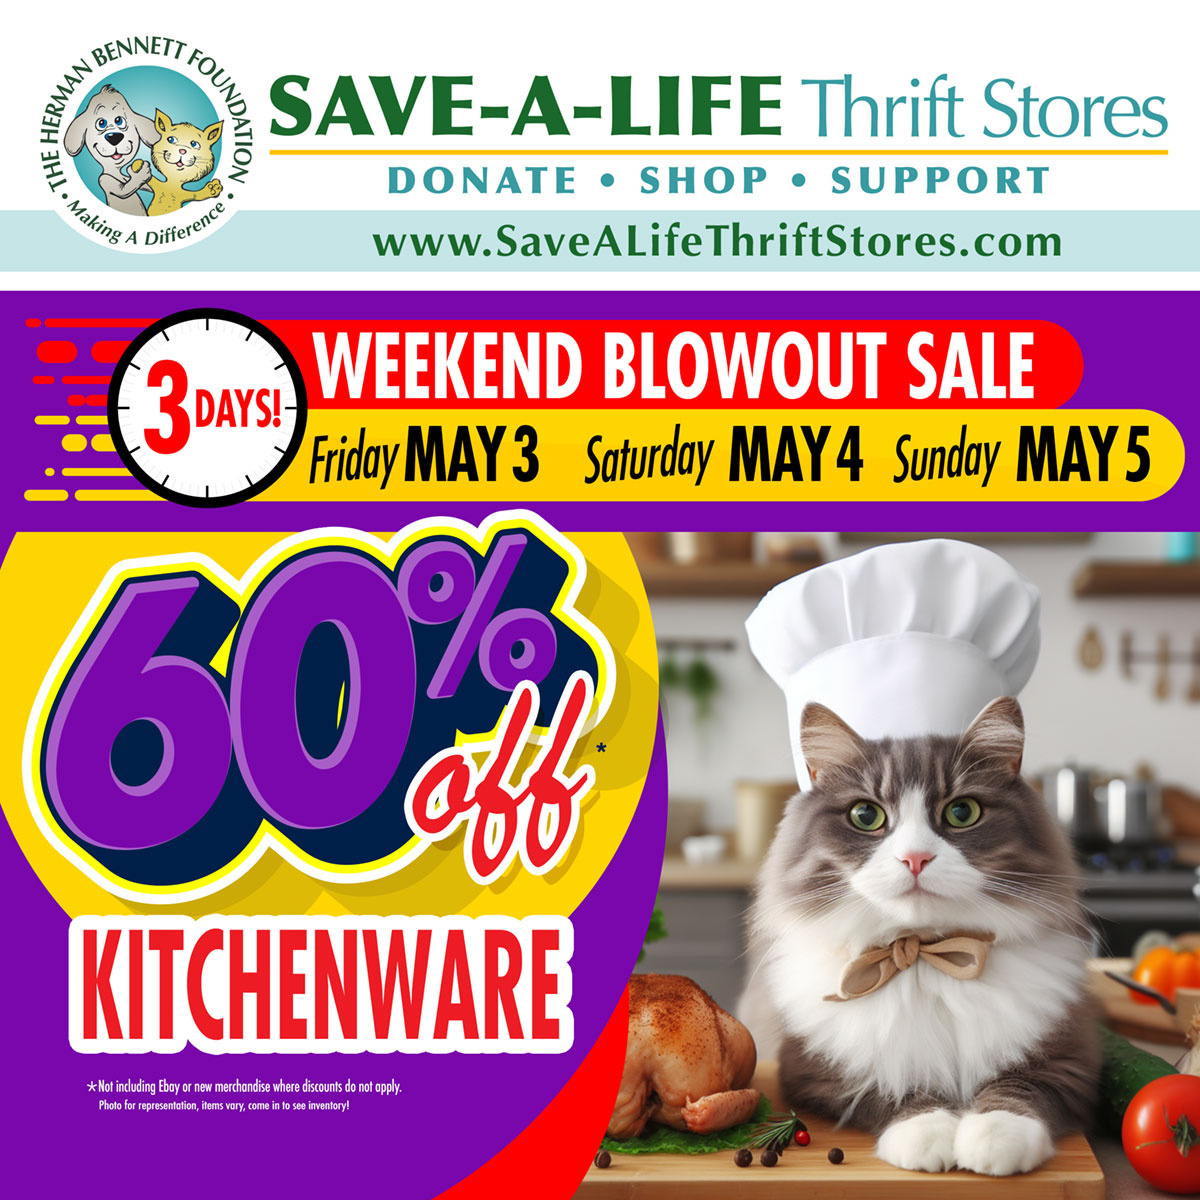 60% Off Kitchenware